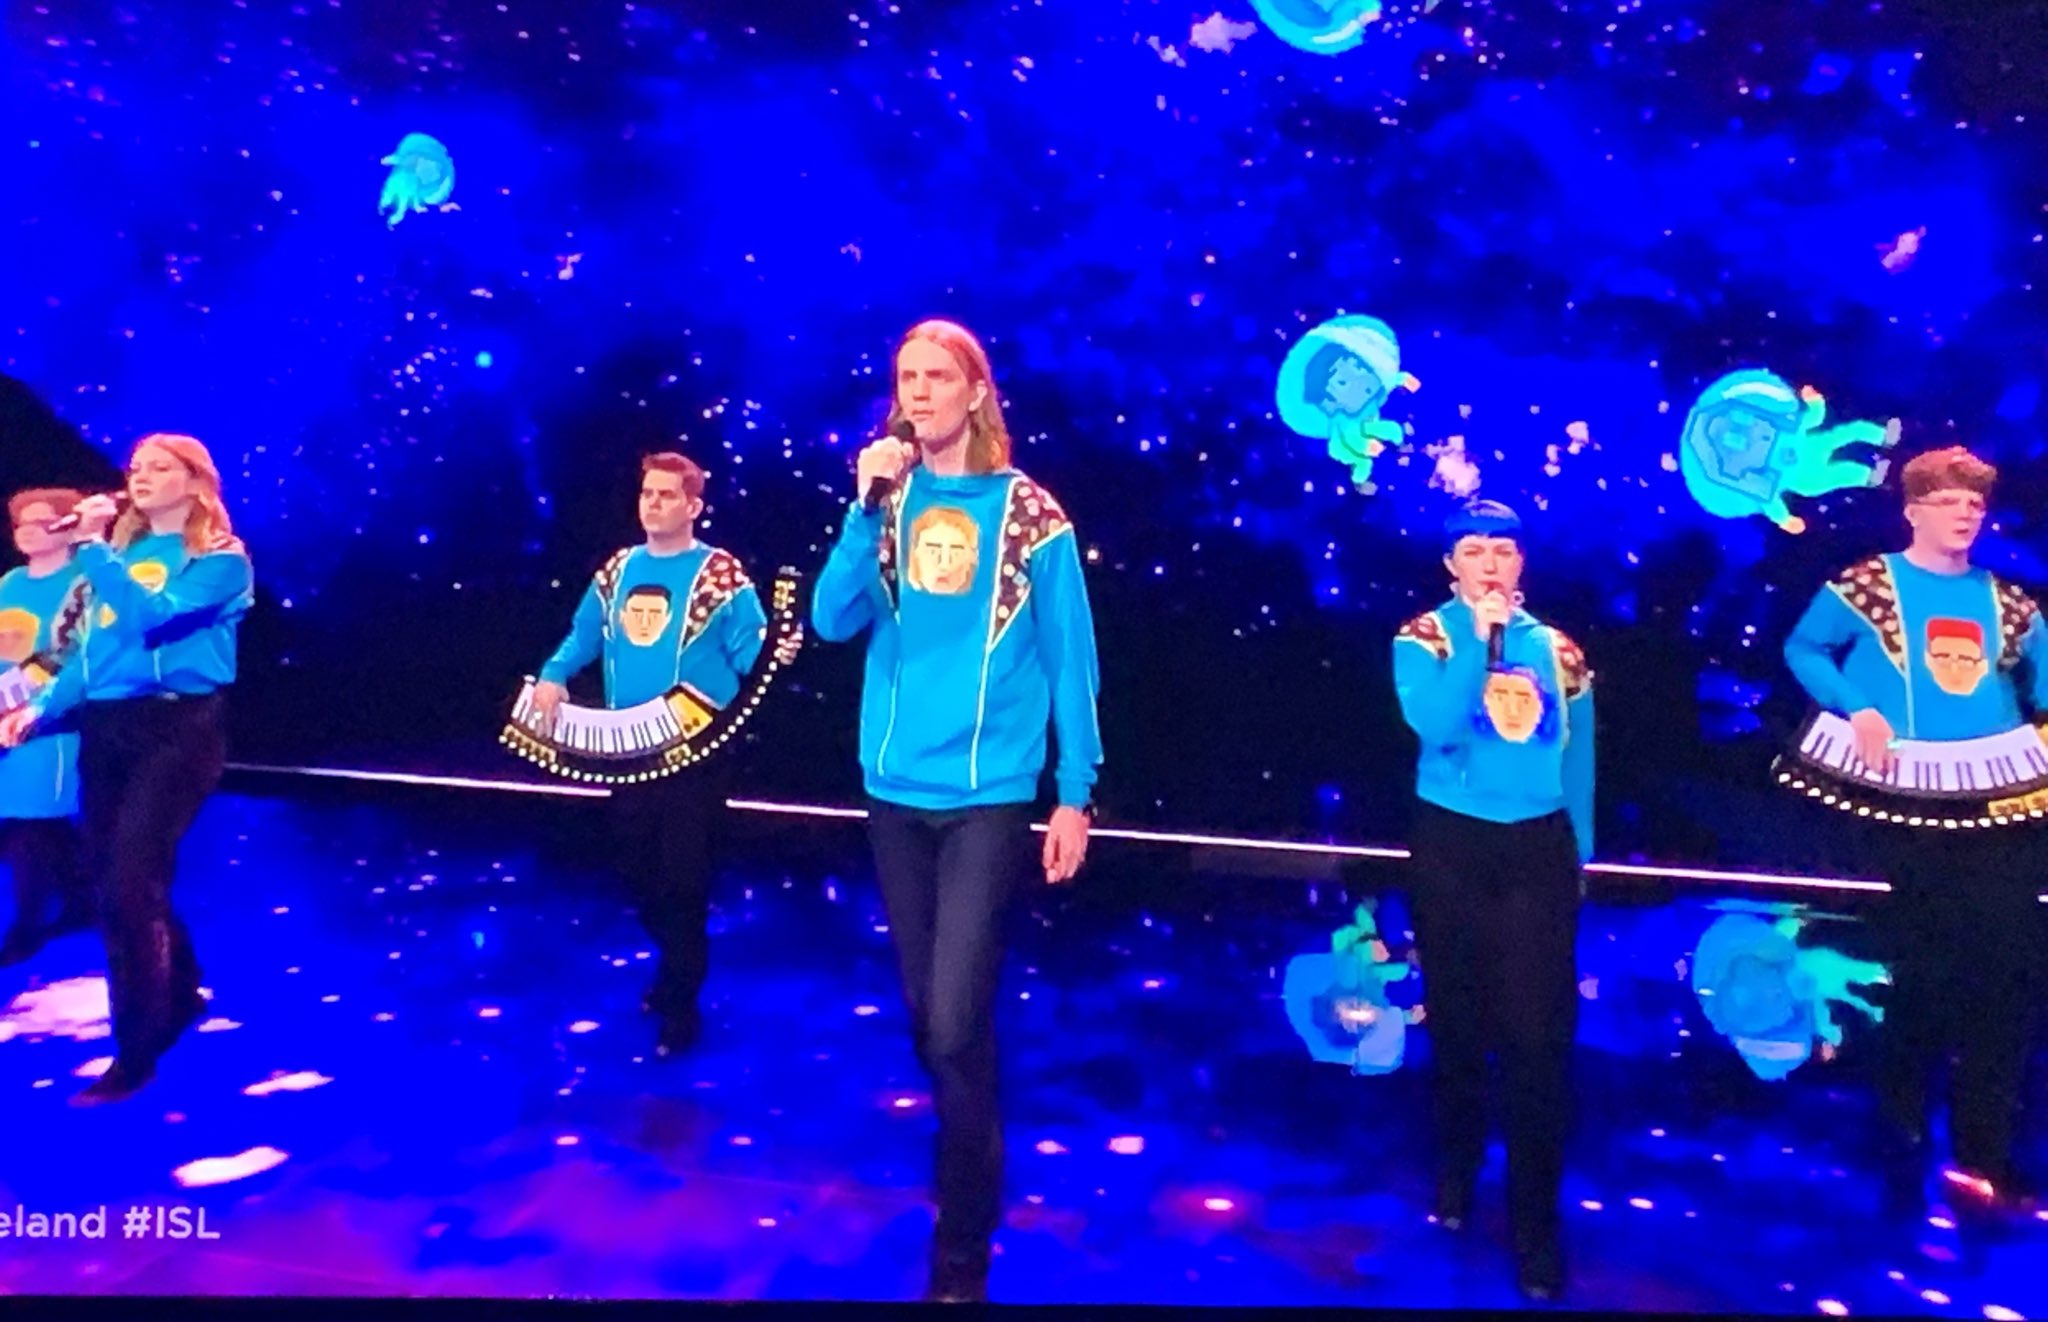 Twitter 上的 𝖸𝗈 𝖮𝗄𝖺𝖽𝖺 アイスランド 年の代表だったグループ 自分の似顔絵のセーター来てるじゃん めっちゃ好き Isl Eurovision Eurovision21 ユーロビジョン T Co Arjeifv3q2 Twitter